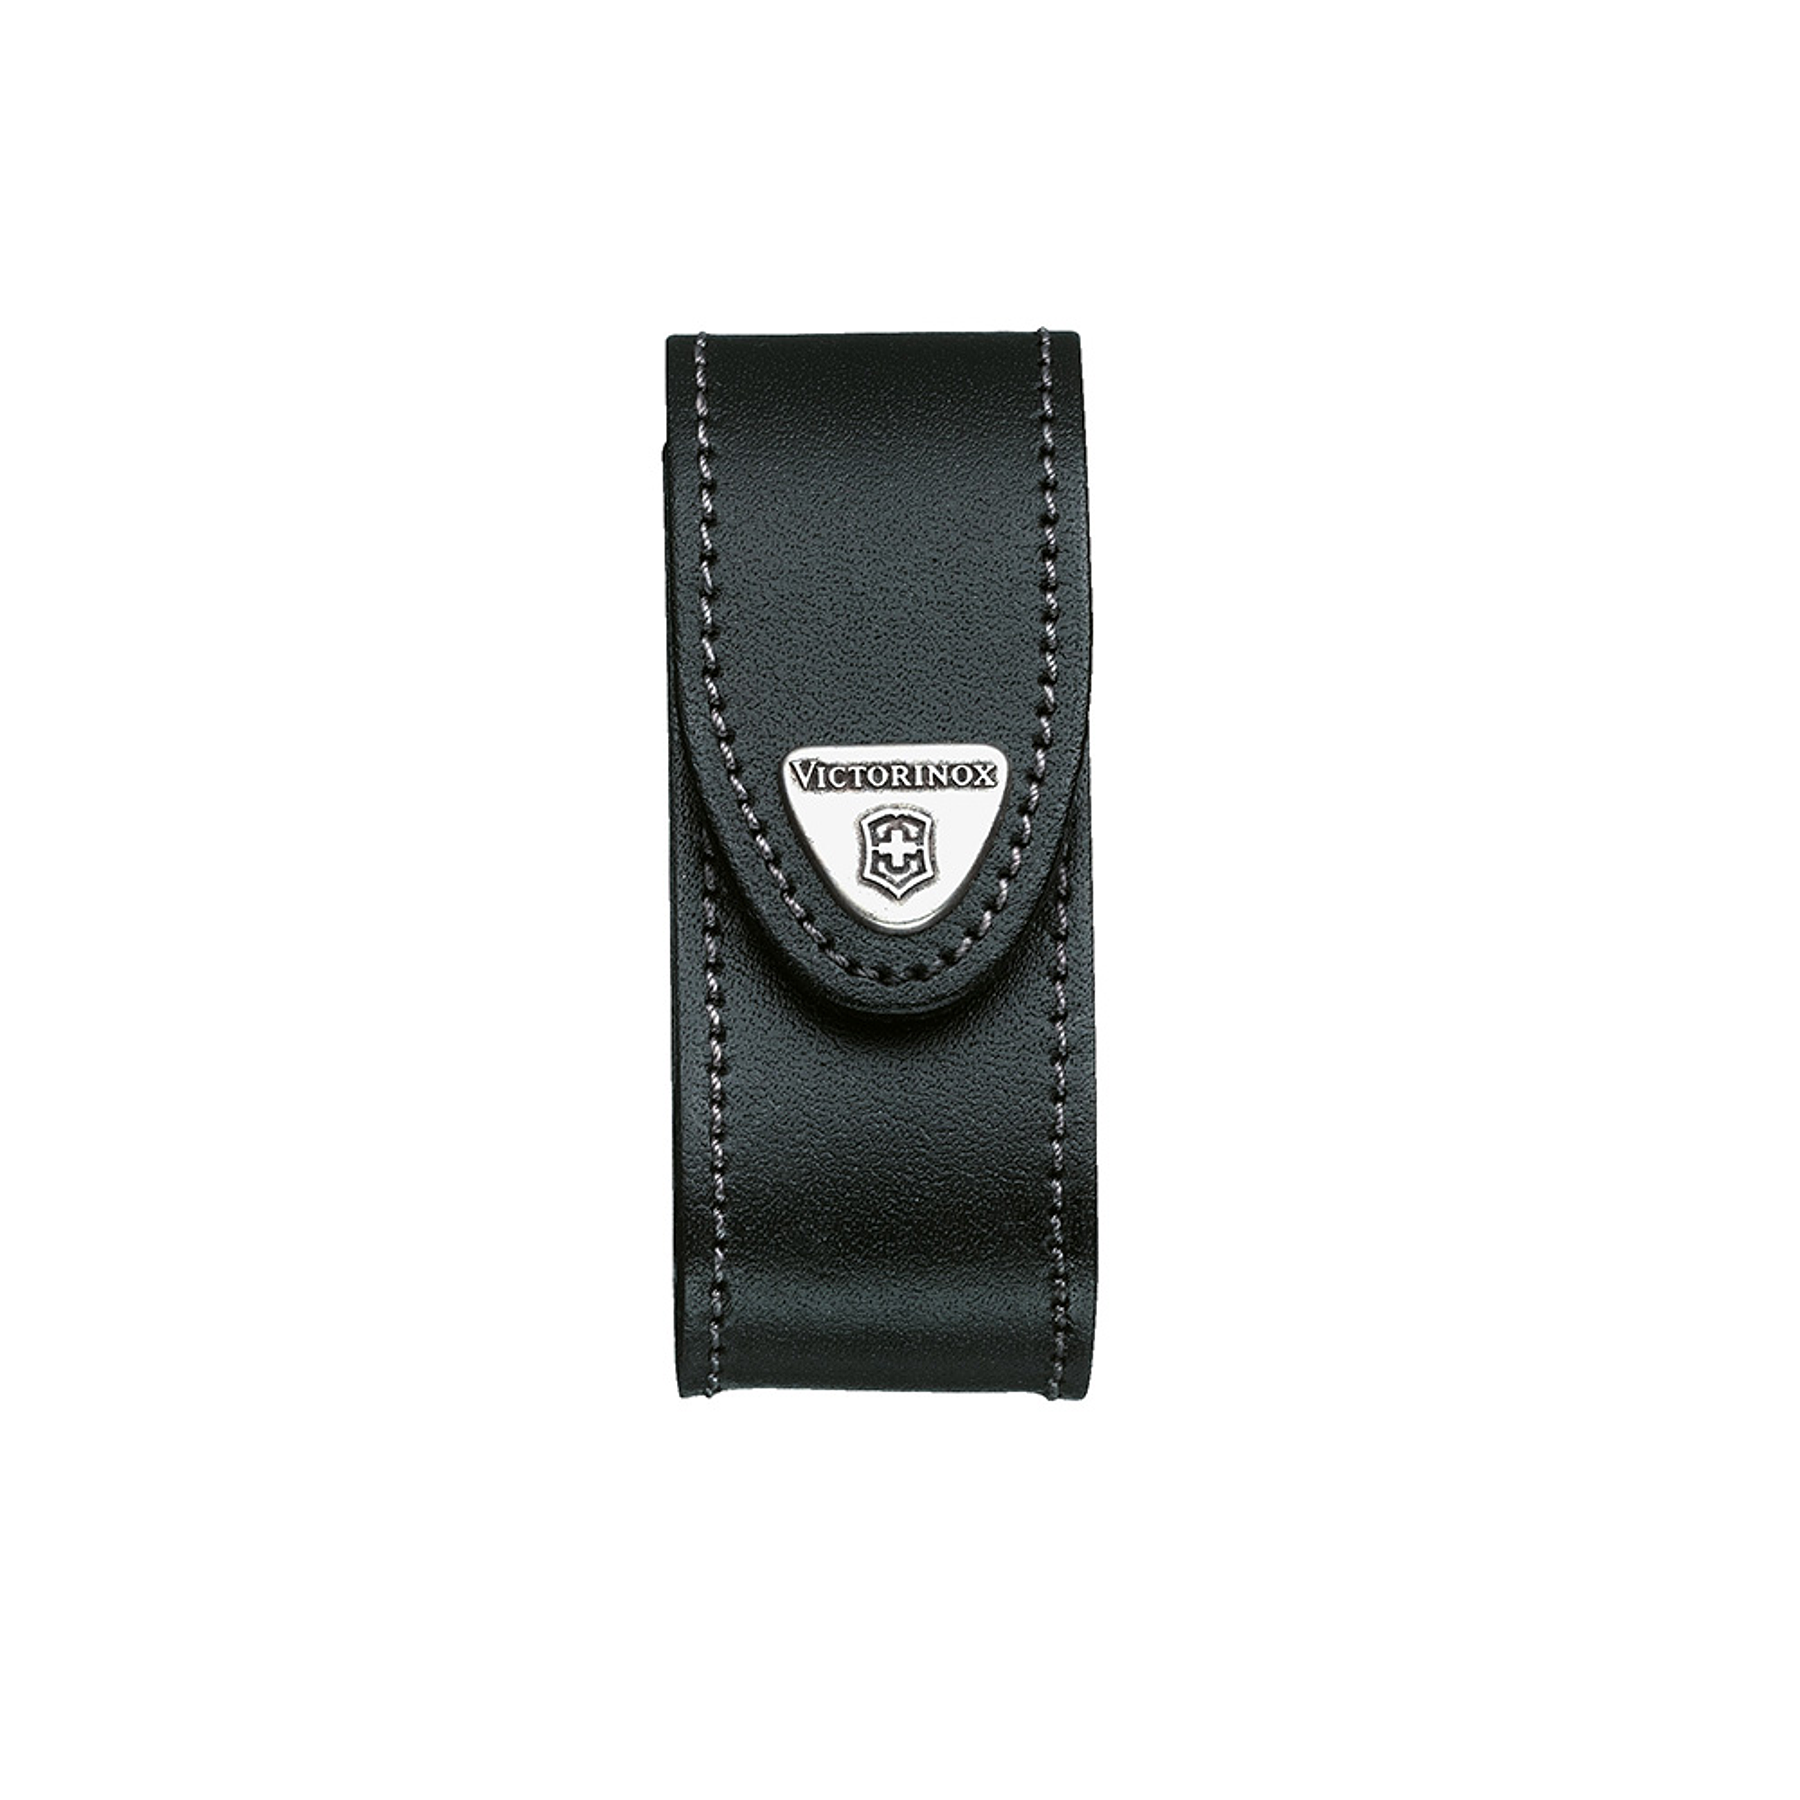 Estuche de cuero color negro para cinturón. Tamaño 10x4,1x3,7 cm Victorinox®